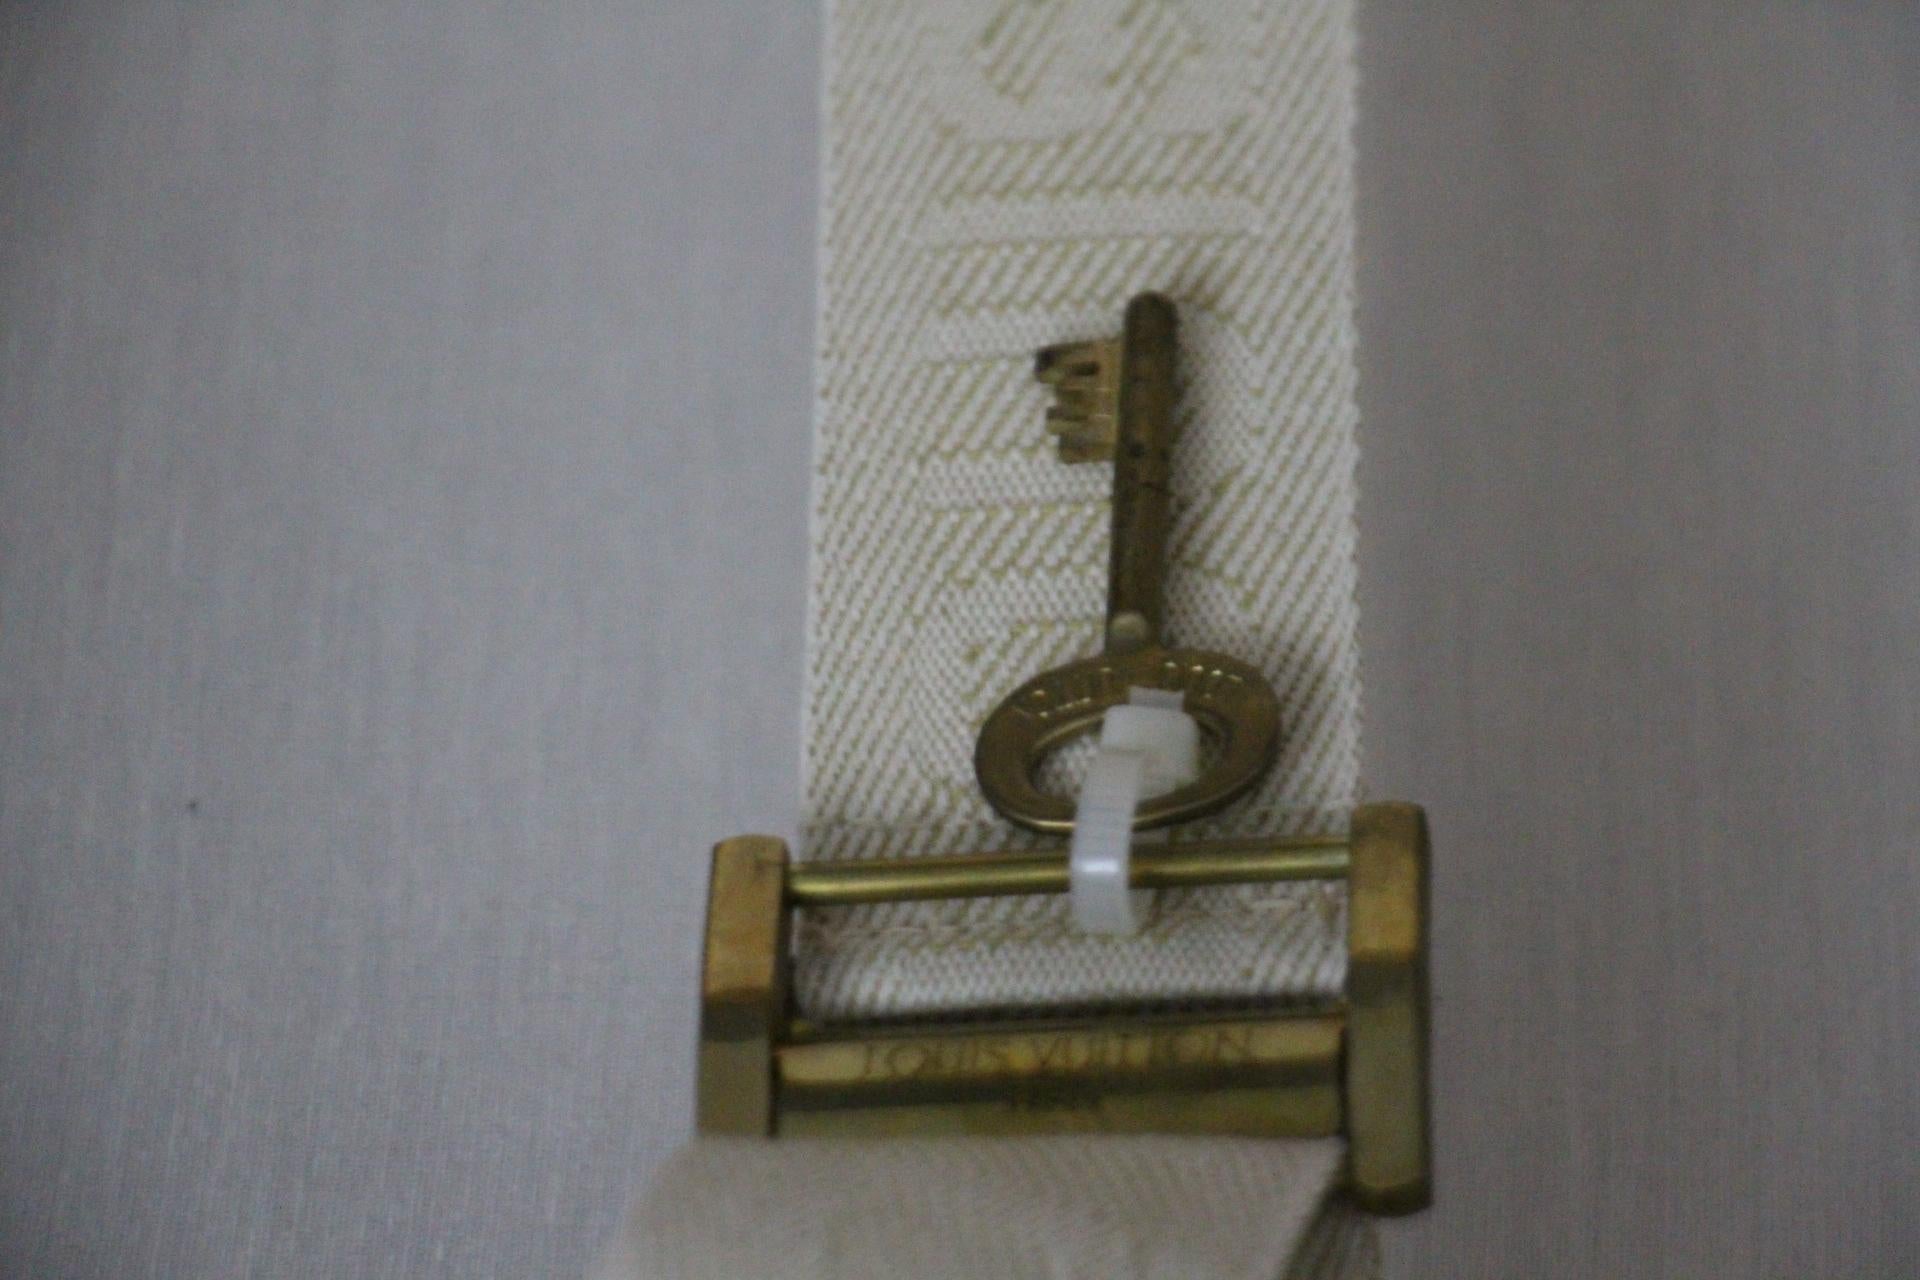  Valise Louis Vuitton, 55 Alzer valise Louis Vuitton, 55 cm 12